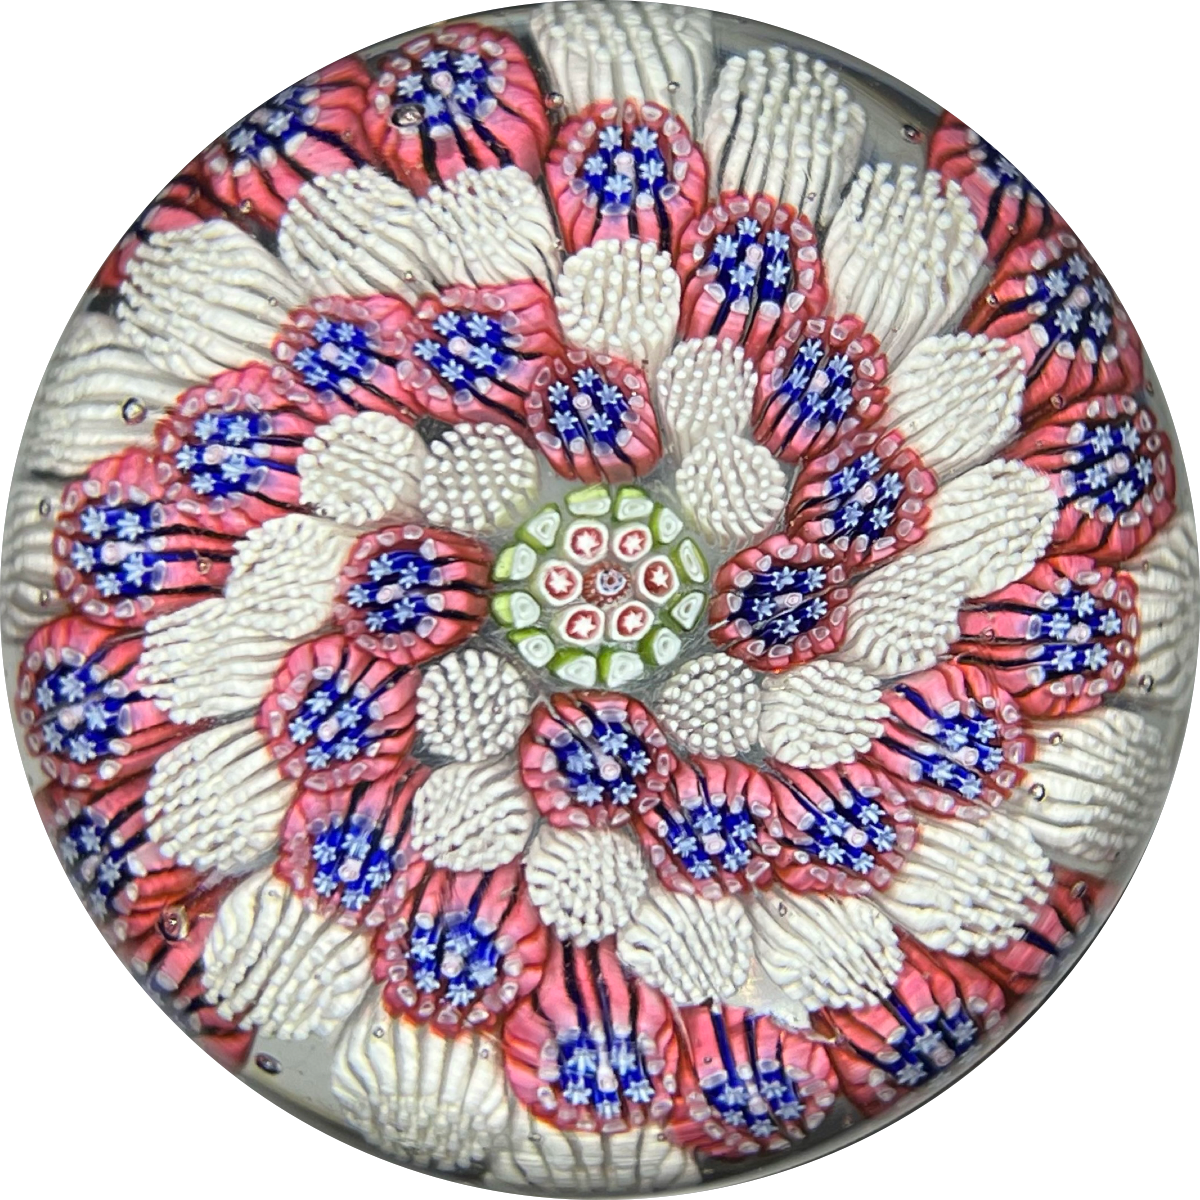 Unique Antique St. Mandé Glass Art Paperweight Spiral Patterned Complex Millefiori